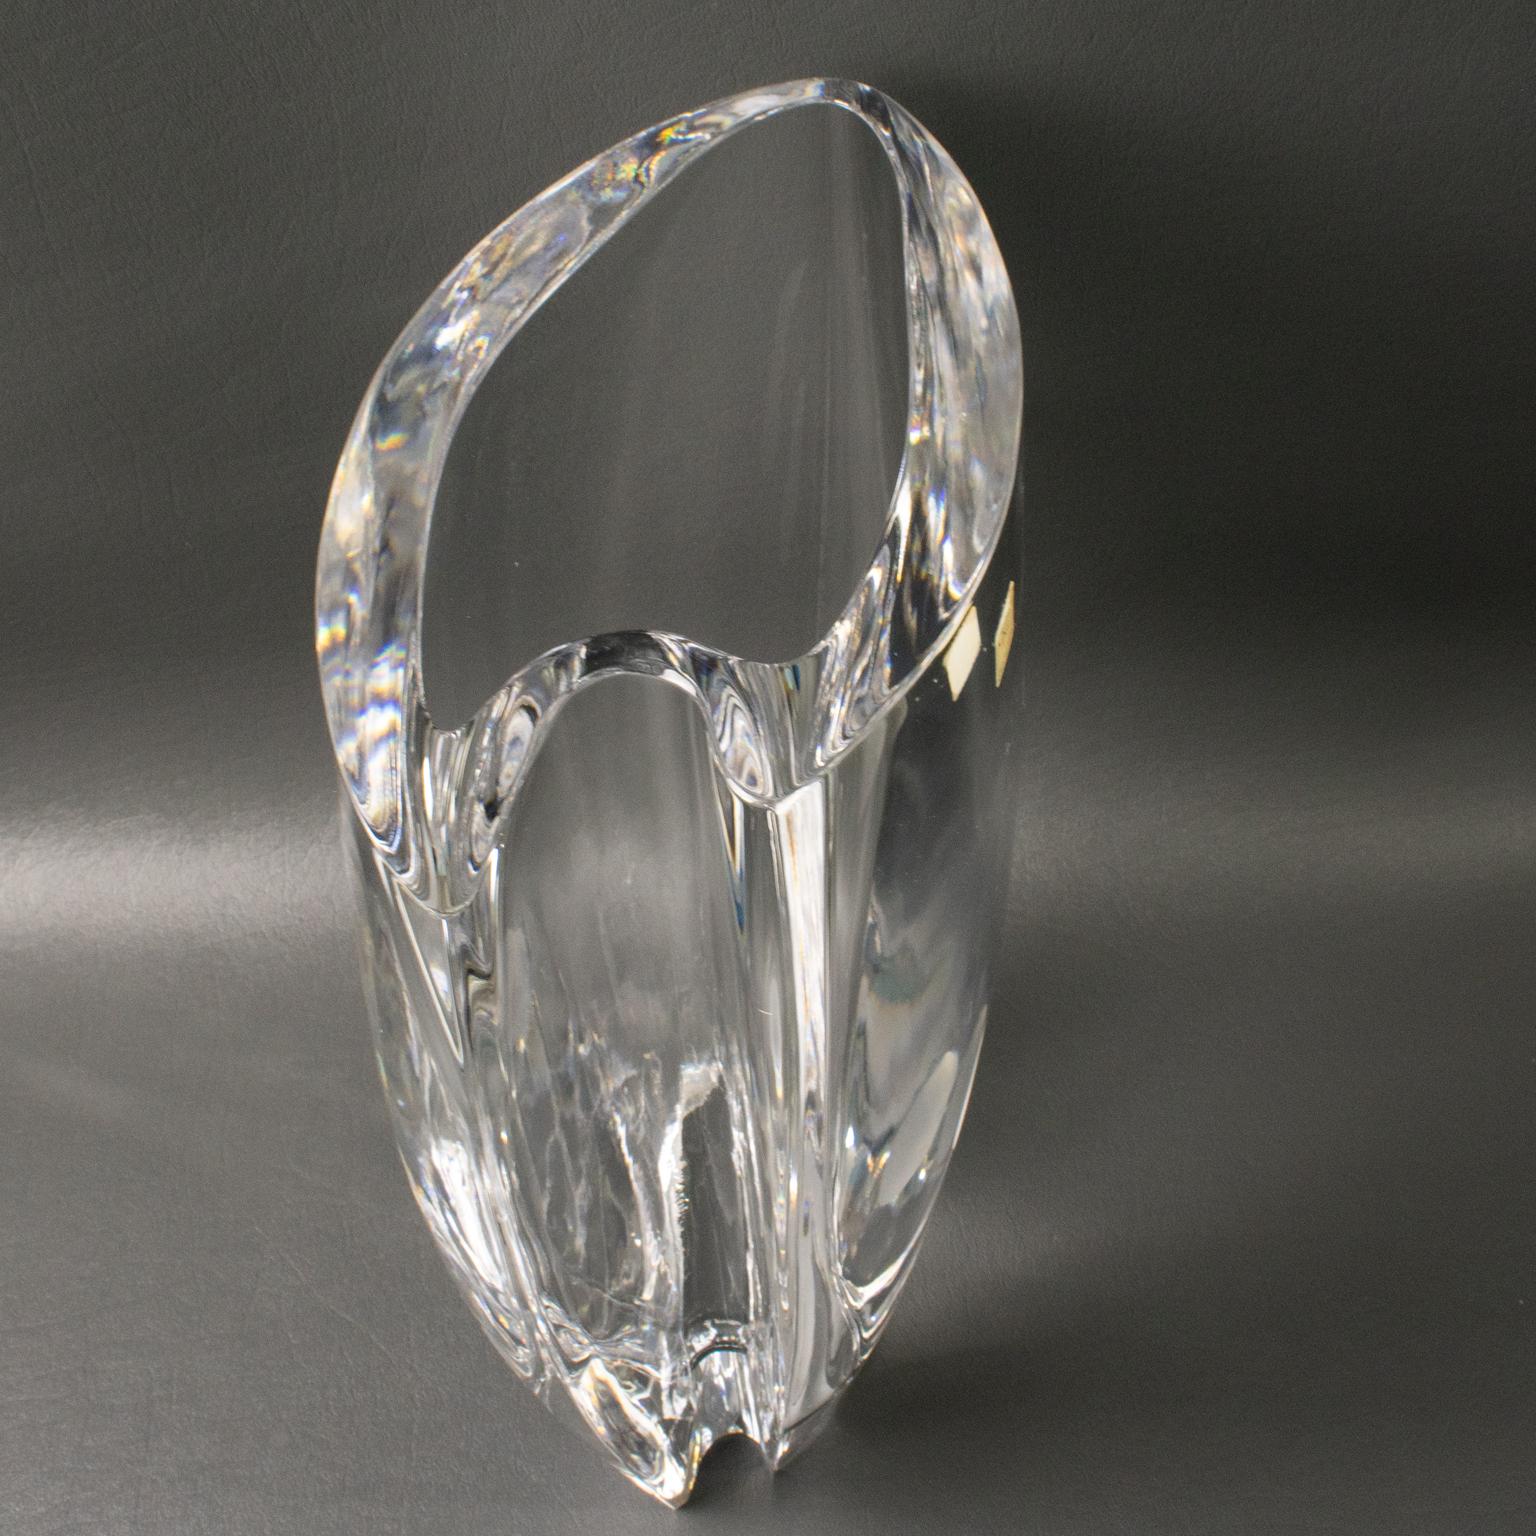 Christian Dior Paris Modernist Crystal Vase For Sale 10